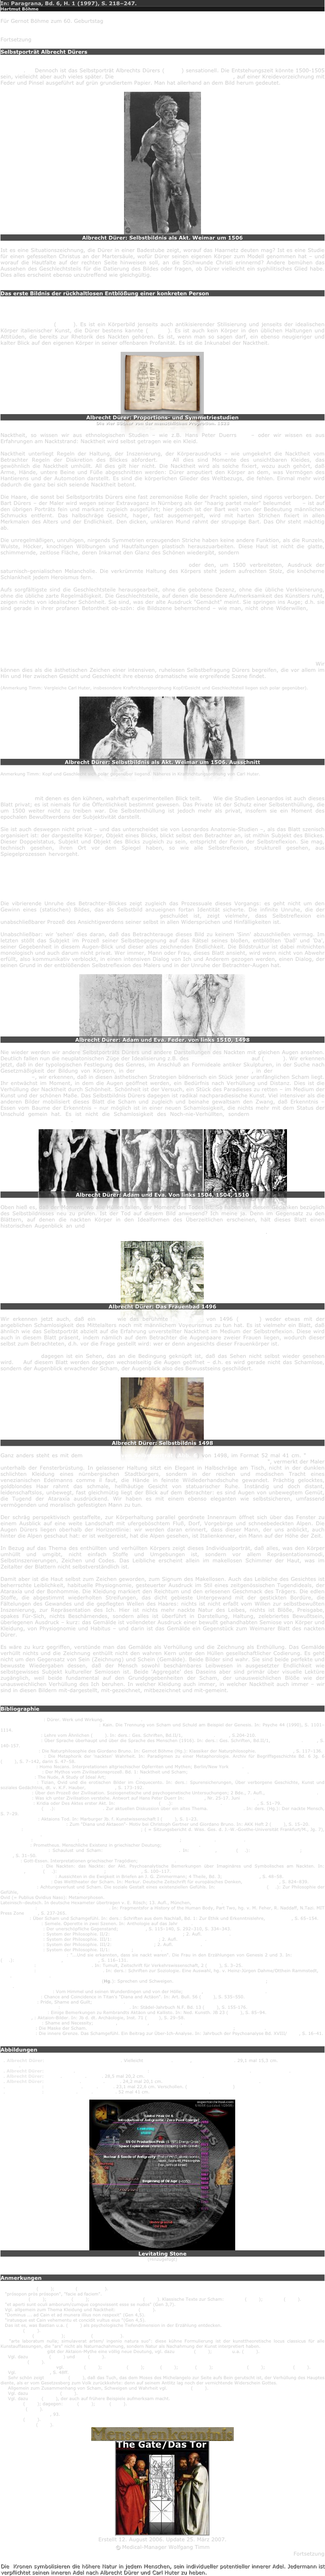 In: Paragrana, Bd. 6, H. 1 (1997), S. 218–247.
Hartmut Böhme

Für Gernot Böhme zum 60. Geburtstag


Fortsetzung

Selbstporträt Albrecht Dürers

In der europäischen Malerei wird die naturale Darstellung des nackten Körpers erst in der Renaissance möglich.20 Dennoch ist das Selbstporträt Albrechts Dürers (Abb.1) sensationell. Die Entstehungszeit könnte 1500-1505 sein, vielleicht aber auch vieles später. Die Maße des Blattes sind 29,1 mal 15,3 cm, auf einer Kreidevorzeichnung mit Feder und Pinsel ausgeführt auf grün grundiertem Papier. Man hat allerhand an dem Bild herum gedeutet.

￼
Albrecht Dürer: Selbstbildnis als Akt. Weimar um 1506

Ist es eine Situationszeichnung, die Dürer in einer Badestube zeigt, worauf das Haarnetz deuten mag? Ist es eine Studie für einen gefesselten Christus an der Martersäule, wofür Dürer seinen eigenen Körper zum Modell genommen hat – und worauf die Hautfalte auf der rechten Seite hinweisen soll, an die Stichwunde Christi erinnernd? Andere bemühen das Aussehen des Geschlechtsteils für die Datierung des Bildes oder fragen, ob Dürer vielleicht ein syphilitisches Glied habe. Dies alles erscheint ebenso unzutreffend wie gleichgültig.


Das erste Bildnis der rückhaltlosen Entblößung einer konkreten Person

Tatsächlich handelt es sich um das erste Bildnis der rückhaltlosen Entblößung einer konkreten Person. Diese Zeichnung steht jenseits jeder Idealität. Der dargestellte Körper hat nichts mit den Proportions- und Symmetriestudien zu tun, mit denen Dürer versuchte, dem Geheimnis der menschlicher Schönheit auf die Spur zu kommen (Abb.2). Es ist ein Körperbild jenseits auch antikisierender Stilisierung und jenseits der idealischen Körper italienischer Kunst, die Dürer bestens kannte (Abb. 3). Es ist auch kein Körper in den üblichen Haltungen und Attitüden, die bereits zur Rhetorik des Nackten gehören. Es ist, wenn man so sagen darf, ein ebenso neugieriger und kalter Blick auf den eigenen Körper in seiner offenbaren Profanität. Es ist die Inkunabel der Nacktheit.

￼
Albrecht Dürer: Proportions- und Symmetriestudien
Die vier Bücher von der menschlichen Proprotion. 1528

Nacktheit, so wissen wir aus ethnologischen Studien – wie z.B. Hans Peter Duerrs 21 – oder wir wissen es aus Erfahrungen am Nacktstrand: Nacktheit wird selbst getragen wie ein Kleid.

Nacktheit unterliegt Regeln der Haltung, der Inszenierung, der Körperausdrucks – wie umgekehrt die Nacktheit vom Betrachter Regeln der Diskretion des Blickes abfordert. 22 All dies sind Momente des unsichtbaren Kleides, das gewöhnlich die Nacktheit umhüllt. All dies gilt hier nicht. Die Nacktheit wird als solche fixiert, wozu auch gehört, daß Arme, Hände, untere Beine und Füße abgeschnitten werden: Dürer amputiert den Körper an dem, was Vermögen des Hantierens und der Automotion darstellt. Es sind die körperlichen Glieder des Weltbezugs, die fehlen. Einmal mehr wird dadurch die ganz bei sich seiende Nacktheit betont.

Die Haare, die sonst bei Selbstporträts Dürers eine fast zeremoniöse Rolle der Pracht spielen, sind rigoros verborgen. Der Bart Dürers – der Maler wird wegen seiner Extravaganz in Nürnberg als der "haarig partet maler" beleumdet 23 – ist auf den übrigen Porträts fein und markant zugleich ausgeführt; hier jedoch ist der Bart weit von der Bedeutung männlichen Schmucks entfernt. Das halbschräge Gesicht, hager, fast ausgemergelt, wird mit harten Strichen fixiert in allen Merkmalen des Alters und der Endlichkeit. Den dicken, unklaren Mund rahmt der struppige Bart. Das Ohr steht mächtig ab.

Die unregelmäßigen, unruhigen, nirgends Symmetrien erzeugenden Striche haben keine andere Funktion, als die Runzeln, Wulste, Höcker, knochigen Wölbungen und Hautfaltungen plastisch herauszuarbeiten. Diese Haut ist nicht die glatte, schimmernde, zeitlose Fläche, deren Inkarnat den Glanz des Schönen wiedergibt, sondern es ist Haut, in die das Leben sich eingezeichnet und eingegraben hat bis zur Entstellung. Weder Physiognomie noch Haut tragen den Schein des Göttlichen, nicht einmal des Geistdurchwirkten oder den, um 1500 verbreiteten, Ausdruck der saturnisch-genialischen Melancholie. Die verkrümmte Haltung des Körpers steht jedem aufrechten Stolz, die knöcherne Schlankheit jedem Heroismus fern.

Aufs sorgfältigste sind die Geschlechtsteile herausgearbeit, ohne die gebotene Dezenz, ohne die übliche Verkleinerung, ohne die übliche zarte Regelmäßigkeit. Die Geschlechtsteile, auf denen die besondere Aufmerksamkeit des Künstlers ruht, zeigen nichts von idealischer Schönheit. Sie sind, was der alte Ausdruck "Gemächt" meint. Sie springen ins Auge; d.h. sie sind gerade in ihrer profanen Betontheit ob-szön: die Bildszene beherrschend – wie man, nicht ohne Widerwillen, nach einiger Zeit bemerkt: zwischen Gesicht und Geschlechtsteilen nämlich teilt sich die Aufmerksamkeit des Betrachters. Es ist unmöglich, zum Gesicht einen ruhenden Augenkontakt herzustellen. Dies ist ein Effekt davon, daß die beiden Augen auf verschiedenen Blickachsen liegen, also leicht schielen. Das rechte Auge Dürers sieht den Betrachter inständig, konzentriert und ernst an; das linke Auge ist schräg nach unten über den Bildrand hinausgerichtet. Diese Blickirritation, zusammen mit den unruhigen Strichführungen und dem fast flackernd auf dem Körper liegenden Licht, läßt den Betrachter nicht in Ruhe. Daß man sich nicht an den Augen, nicht am Gesicht Dürers halten kann, läßt den Blick immer wieder herunterspringen zu den knolligen Geschlechtsteilen wie zu einem zweiten Gesicht. Und dadurch entsteht eine ganz außerordentliche, von Unruhe erfüllte Kommunikation zwischen Gesicht und Geschlechtsteilen im Medium des Betrachterblickes. Wir können dies als die ästhetischen Zeichen einer intensiven, ruhelosen Selbstbefragung Dürers begreifen, die vor allem im Hin und Her zwischen Gesicht und Geschlecht ihre ebenso dramatische wie ergreifende Szene findet.

(Anmerkung Timm: Vergleiche Carl Huter, insbesondere Kraftrichtungsordnung Kopf/Gesicht und Geschlechtsteil liegen sich polar gegenüber).

￼￼
Albrecht Dürer: Selbstbildnis als Akt. Weimar um 1506. Ausschnitt

Anmerkung Timm: Kopf und Geschlecht sich polar gegenüber liegend. Näheres in Kraftrichtungsordnung von Carl Huter.

Dieses Blatt ist ein einzigartiges Dokument der anthropologischen Selbstreflexion und der neuzeitlichen Entdeckung des Körpers. Es ist seinem Range nach vergleichbar den anatomischen Studienblättern Leonardos, mit denen es den kühnen, wahrhaft experimentellen Blick teilt. 24 Wie die Studien Leonardos ist auch dieses Blatt privat; es ist niemals für die Öffentlichkeit bestimmt gewesen. Das Private ist der Schutz einer Selbstenthüllung, die um 1500 weiter nicht zu treiben war. Die Selbstenthüllung ist jedoch mehr als privat, insofern sie ein Moment des epochalen Bewußtwerdens der Subjektivität darstellt.

Sie ist auch deswegen nicht privat – und das unterscheidet sie von Leonardos Anatomie-Studien –, als das Blatt szenisch organisiert ist: der dargestellte Körper, Objekt eines Blicks, blickt selbst den Betrachter an, ist mithin Subjekt des Blickes. Dieser Doppelstatus, Subjekt und Objekt des Blicks zugleich zu sein, entspricht der Form der Selbstreflexion. Sie mag, technisch gesehen, ihren Ort vor dem Spiegel haben, so wie alle Selbstreflexion, strukturell gesehen, aus Spiegelprozessen hervorgeht. Die rücksichtslose Nacktheit demonstriert dabei, daß Selbstreflexion nur radikal sein kann – oder gar nicht. Insofern stellt dieses erste Blatt nicht nur einen qualitativen Epochensprung in der ästhetischen Selbstaneignung des Körpers dar, sondern es setzt zugleich die unhintergehbare Norm aller, auch der philosophischen Reflexivität.

Diese hat wahrhaftig und rücksichtslos auf den Grund, nämlich den Körper zu gehen: Selbstreflexion ist ein Vorgang der Enthüllung.

Die vibrierende Unruhe des Betrachter-Blickes zeigt zugleich das Prozessuale dieses Vorgangs: es geht nicht um den Gewinn eines (statischen) Bildes, das als Selbstbild anzueignen fortan Identität sicherte. Die infinite Unruhe, die der polaren Spannung von Gesicht und Geschlecht geschuldet ist, zeigt vielmehr, dass Selbstreflexion ein unabschließbarer Prozeß des Ansichtigwerdens seiner selbst in allen Widersprüchen und Hinfälligkeiten ist.

Unabschließbar: wir 'sehen' dies daran, daß das Betrachterauge dieses Bild zu keinem 'Sinn' abzuschließen vermag. Im letzten stößt das Subjekt im Prozeß seiner Selbstbegegnung auf das Rätsel seines bloßen, entblößten 'Daß' und 'Da', seiner Gegebenheit in diesem Augen-Blick und dieser alles zeichnenden Endlichkeit. Die Bildstruktur ist dabei mitnichten monologisch und auch darum nicht privat. Wer immer, Mann oder Frau, dieses Blatt ansieht, wird wenn nicht von Abwehr erfüllt, also kommunikativ verblockt, in einen intensiven Dialog von Ich und Anderem gezogen werden, einen Dialog, der seinen Grund in der entblößenden Selbstreflexion des Malers und in der Unruhe der Betrachter-Augen hat.

￼￼
Albrecht Dürer: Adam und Eva. Feder. von links 1510, 1498

Nie wieder werden wir andere Selbstporträts Dürers und andere Darstellungen des Nackten mit gleichen Augen ansehen. Deutlich fallen nun die neuplatonischen Züge der Idealisierung z.B. des Urmenschen-Paares auf (Abb. 4). Wir erkennen jetzt, daß in der typologischen Festlegung des Genres, im Anschluß an Formideale antiker Skulpturen, in der Suche nach Gesetzmäßigkeit der Bildung von Körpern, in der Suche nach Proportion und Harmonie, in der Suche also nach Schönheit –, wir erkennen, daß in diesen ästhetischen Strategien bildnerisch ein Stück jener uranfänglichen Scham liegt. Ihr entwächst im Moment, in dem die Augen geöffnet werden, ein Bedürfnis nach Verhüllung und Distanz. Dies ist die Verhüllung der Nacktheit durch Schönheit. Schönheit ist der Versuch, ein Stück des Paradieses zu retten – im Medium der Kunst und der schönen Maße. Das Selbstbildnis Dürers dagegen ist radikal nachparadiesische Kunst. Viel intensiver als die anderen Bilder mobilisiert dieses Blatt die Scham und zugleich und beinahe gewaltsam den Zwang, daß Erkenntnis – Essen vom Baume der Erkenntnis – nur möglich ist in einer neuen Schamlosigkeit, die nichts mehr mit dem Status der Unschuld gemein hat. Es ist nicht die Schamlosigkeit des Noch-nie-Verhüllten, sondern die Schamlosigkeit des rücksichtslos Enthüllten.

￼￼￼
Albrecht Dürer: Adam und Eva. Von links 1504, 1504, 1510

Oben hieß es, daß der Moment, wo alle Hüllen fallen, der Moment des Todes ist. So haben wir diesen Gedanken bezüglich des Selbstbildnisses neu zu prüfen. Ist der Tod auf diesem Bild anwesend? Ich meine ja. Denn im Gegensatz zu den Blättern, auf denen die nackten Körper in den Idealformen des Überzeitlichen erscheinen, hält dieses Blatt einen historischen Augenblick an und zeichnet den Körper mit allen Malen der Zeitlichkeit – ganz und gar ist dieser Körper in der Zeit angekommen, ganz und gar ist er der verletzliche und sterbliche Körper.

￼
Albrecht Dürer: Das Frauenbad 1496

Wir erkennen jetzt auch, daß ein Stich wie das berühmte Frauenbad von 1496 (Abb. 5) weder etwas mit der angeblichen Schamlosigkeit des Mittelalters noch mit männlichem Voyeurismus zu tun hat. Es ist vielmehr ein Blatt, daß ähnlich wie das Selbstporträt abzielt auf die Erfahrung unverstellter Nacktheit im Medium der Selbstreflexion. Diese wird auch in diesem Blatt präsent, indem nämlich auf dem Betrachter die Augenpaare zweier Frauen liegen, wodurch dieser selbst zum Betrachteten, d.h. vor die Frage gestellt wird: wer er denn angesichts dieser Frauenkörper ist.

Voyeurismus dagegen ist ein Sehen, das an die Bedingung geknüpft ist, daß das Sehen nicht selbst wieder gesehen wird.25 Auf diesem Blatt werden dagegen wechselseitig die Augen geöffnet – d.h. es wird gerade nicht das Schamlose, sondern der Augenblick erwachender Scham, der Augenblick also des Bewusstseins geschildert.

￼
Albrecht Dürer: Selbstbildnis 1498

Ganz anders steht es mit dem repräsentativen Selbstporträt (Abb. 6) von 1498, im Format 52 mal 41 cm. "1498/ Das malt ich nach meiner gestalt/ Ich was sechs und zwenzig jar alt./ Albrecht Dürer/ AD", vermerkt der Maler unterhalb der Fensterbrüstung. In gelassener Haltung sitzt ein Elegant in Halbschräge am Tisch, nicht in der dunklen schlichten Kleidung eines nürnbergischen Stadtbürgers, sondern in der reichen und modischen Tracht eines venezianischen Edelmanns comme il faut, die Hände in feinste Wildlederhandschuhe gewandet. Prächtig gelocktes, goldblondes Haar rahmt das schmale, hellhäutige Gesicht von statuarischer Ruhe. Inständig und doch distant, leidenschaftslos, unbewegt, fast gleichmütig liegt der Blick auf dem Betrachter: es sind Augen von unbewegtem Gemüt, die Tugend der Ataraxía ausdrückend. Wir haben es mit einem ebenso eleganten wie selbstsicheren, umfassend vermögenden und moralisch gefestigten Mann zu tun.

Der schräg perspektivisch gestaffelte, zur Körperhaltung parallel geordnete Innenraum öffnet sich über das Fenster zu einem Ausblick auf eine weite Landschaft mit ufergeböschtem Fluß, Dorf, Vorgebirge und schneebedeckten Alpen. Die Augen Dürers liegen oberhalb der Horizontlinie: wir werden daran erinnert, dass dieser Mann, der uns anblickt, auch hinter die Alpen geschaut hat: er ist weitgereist, hat die Alpen gesehen, ist Italienkenner, ein Mann auf der Höhe der Zeit.

In Bezug auf das Thema des enthüllten und verhüllten Körpers zeigt dieses Individualporträt, daß alles, was den Körper umhüllt und umgibt, nicht einfach Stoffe und Umgebungen ist, sondern vor allem Repräsentationsmodi, Selbstinszenierungen, Zeichen und Codes. Das Leibliche erscheint allein im makellosen Schimmer der Haut, was im Zeitalter der Blattern nicht selbstverständlich ist.

Damit aber ist die Haut selbst zum Zeichen geworden, zum Signum des Makellosen. Auch das Leibliche des Gesichtes ist beherrschte Leiblichkeit, habituelle Physiognomie, gesteuerter Ausdruck im Stil eines zeitgenössischen Tugendideals, der Ataraxía und der Bonhommie. Die Kleidung markiert den Reichtum und den erlesenen Geschmack des Trägers. Die edlen Stoffe, die abgestimmt wiederholten Streifungen, das dicht gebieste Untergewand mit der gestickten Bordüre, die Fältelungen des Gewandes und die gepflegten Wellen des Haares: nichts ist nicht erfaßt vom Willen zur selbstbewußten Inszenierung, zur Repräsentation des Ich. Hier ist nichts mehr nackte Natur des Leibes, nichts ist Blöße, Preisgabe, opakes Für-Sich, nichts Beschämendes, sondern alles ist überführt in Darstellung, Haltung, zelebriertes Bewußtsein, überlegenen Ausdruck – kurz: das Gemälde ist vollendeter Ausdruck einer bewußt gehandhabten Semiose von Körper und Kleidung, von Physiognomie und Habitus – und darin ist das Gemälde ein Gegenstück zum Weimarer Blatt des nackten Dürer.

Es wäre zu kurz gegriffen, verstünde man das Gemälde als Verhüllung und die Zeichnung als Enthüllung. Das Gemälde verhüllt nichts und die Zeichnung enthüllt nicht den wahren Kern unter den Hüllen gesellschaftlicher Codierung. Es geht nicht um den Gegensatz von Sein (Zeichnung) und Schein (Gemälde). Beide Bilder sind wahr. Sie sind beide perfekte und bewusste Wiedergaben dessen, daß der Mensch sowohl beschämbares Leibwesen in ausgesetzter Endlichkeit wie selbstgewisses Subjekt kultureller Semiosen ist. Beide 'Aggregate' des Daseins aber sind primär über visuelle Lektüre zugänglich, weil beide fundamental auf den Grundgegebenheiten der Scham, der unausweichlichen Blöße wie der unausweichlichen Verhüllung des Ich beruhen. In welcher Kleidung auch immer, in welcher Nacktheit auch immer – wir sind in diesen Bildern mit-dargestellt, mit-gezeichnet, mitbezeichnet und mit-gemeint.


Bibliographie

Fedja Anzelewsky: Dürer. Werk und Wirkung. Stuttgart 1980.
Till Bastian/ Isny Hilgers/ Micha Hilgers: Kain. Die Trennung von Scham und Schuld am Beispiel der Genesis. In: Psyche 44 (1990), S. 1101–1114.
Walter Benjamin: Lehre vom Ähnlichen (1933). In: ders.: Ges. Schriften, Bd.II/1, Frankfurt/M. 1977, S.204-210.
Walter Benjamin: Über Sprache überhaupt und über die Sprache des Menschen (1916). In: ders.: Ges. Schriften, Bd.II/1, Frankfurt/M. 1977, S. 140-157.
Hartmut Böhme: Die Naturphilosophie des Giordano Bruno. In: Gernot Böhme (Hg.): Klassiker der Naturphilosophie. München 1989, S. 117–136.
Hans Blumenberg: Die Metaphorik der 'nackten' Wahrheit. In: Paradigmen zu einer Metaphorologie. Archiv für Begriffsgeschichte Bd. 6 Jg. 6 (1960), S. 7–142, darin S. 47–58.
Walter Burkert: Homo Necans. Interpretationen altgriechischer Opferriten und Mythen; Berlin/New York 1972.
Hans Peter Duerr: Der Mythos vom Zivilisationsprozeß. Bd. 1: Nacktheit und Scham; Frankfurt am Main 1988.
Kenneth Clark: The Nude, A Study of Ideal Art; London 1956.
Carlo Ginzburg: Tizian, Ovid und die erotischen Bilder im Cinquecento. In: ders.: Spurensicherungen, Über verborgene Geschichte, Kunst und soziales Gedächtnis, dt. v. K.F. Hauber, Berlin 1983, S. 173-192.
Norbert Elias: Über den Prozeß der Zivilisation. Soziogenetische und psychogenetische Untersuchungen; 2 Bde., 7. Aufl., Frankfurt/Main 1980.
Norbert Elias: Was ich unter Zivilisation verstehe. Antwort auf Hans Peter Duerr In: Die Zeit, Nr. 25-17. Juni 1988.
Berthold Hinz: Kridia oder Des Aktes erster Akt. In: Detlev Hoffmann (Hg.): Der Nackte Mensch. Marburg 1989, S. 51–79.
Detlef Hoffmann (Hg.): Der nackte Mensch. Zur aktuellen Diskussion über ein altes Thema. Marburg 1989. In: ders. (Hg.): Der nackte Mensch, S. 7–29.
Paul Jacobsthal: Aktaions Tod. In: Marburger Jb. f. Kunstwissenschaft I (1929), S. 1–23.
José Kastler/ Lemgo-Brake: Zum "Diana und Aktaeon"- Motiv bei Christoph Gertner und Giordano Bruno. In: AKK Heft 2 (1991), S. 15–20.
H. Keller: Tizians Poesie für König Philipp II. von Spanien; ( = Sitzungsbericht d. Wiss. Ges. d. J.-W.-Goethe-Universität Frankfurt/M., Jg. 7), Wiesbaden 1969.
Martin Kemp: Leonardo da Vinci: The marvellous works of nature and man; London 1981. Repr. 1989.
Karl Kerényi: Prometheus. Menschliche Existenz in griechischer Deutung; Hamburg 1959.
Thomas Kleinspehn: Schaulust und Scham: Zur Sexualisierung des Blicks. In: Hoffmann, Detlef (Hg.): Der nackte Mensch; Marburg 1989, S. 31–50.
Jan Kott: Gott-Essen. Interpretationen griechischer Tragödien; München 1975.
Volkhard Knigge: Die Nackten: das Nackte: der Akt. Psychoanalytische Bemerkungen über Imaginäres und Symbolisches am Nackten. In: Hoffmann, Detlef (Hg.): Der nackte Mensch; Marburg 1989, S. 100–117.
Johann Caspar Lavater: Aussichten in die Ewigkeit in Briefen an J. G. Zimmermann; 4 Theile, Bd. 3; Hamburg 1773, S. 48–58.
Hans-Thies Lehmann: Das Welttheater der Scham. In: Merkur. Deutsche Zeitschrift für europäisches Denken, München 1991, S. 824–839.
Sighard Neckel: Achtungsverlust und Scham. Die soziale Gestalt eines existenziellen Gefühls. In: Fink-Eitel/Lohmann (Hg.): Zur Philosophie der Gefühle, Frankfurt am Main 1993.
Ovid (= Publius Ovidius Naso): Metamorphosen.
Lateinisch–deutsch. In deutsche Hexameter übertragen v. E. Rösch; 13. Aufl., München, Zürich 1992.
Mario Perniola: Between Clothing and Nudity. In: Fragmentsfor a History of the Human Body, Part Two, hg. v. M. Feher, R. Naddaff, N.Tazi. MIT Press Zone 1991, S. 237-265.
Max Scheler: Über Scham und Schamgefühl. In: ders.: Schriften aus dem Nachlaß, Bd. 1: Zur Ethik und Erkenntnislehre, Bern 1957, S. 65–154.
Friedrich Schiller: Semele. Operette in zwei Szenen. In: Anthologie auf das Jahr 1782.
Hermann Schmitz: Der unerschöpfliche Gegenstand; Bonn 1990, S. 115–140, S. 292–310, S. 334–343.
Hermann Schmitz: System der Philosophie. II/2: Der Leib im Spiegel der Kunst; 2. Aufl. Bonn 1987.
Hermann Schmitz: System der Philosophie. III/1: Der leibliche Raum; 2. Aufl. Bonn 1988.
Hermann Schmitz: System der Philosophie. III/2: Der Gefühlsraum; 2. Aufl. Bonn 1981.
Hermann Schmitz: System der Philosophie. II/1: Der Leib; Bonn 1965.
Helen Schüngel-Straumann: "...Und sie erkannten, dass sie nackt waren". Die Frau in den Erzählungen von Genesis 2 und 3. In: D. Hoffmann (Hg.): Der nackte Mensch, Marburg 1989, S. 116–131.
Walter Seitter: Nacktheit als Kleidung. In: Tumult, Zeitschrift für Verkehrswissenschaft, 2 (1979), S. 3–25.
Georg Simmel: Zur Psychologie der Scham. In: ders.: Schriften zur Soziologie. Eine Auswahl, hg. v. Heinz-Jürgen Dahme/Otthein Rammstedt, 2. Aufl. Frankfurt 1986.
Albert Spitznagel/ Lothar Schmidt-Atzert (Hg.): Sprechen und Schweigen. Zur Psychologie der Selbstenthüllung; Bern Stuttgart Toronto 1986.
Emanuel Swedenborg: Vom Himmel und seinen Wunderdingen und von der Hölle; 2. Aufl., Basel/Ludwigsburg 1869.
Nancy M. Tanner: Chance and Coincidence in Titan's "Diana and Actäon". In: Art. Bull. 56 (1974), S. 535–550.
Gabriele Taylor: Pride, Shame and Guilt; Oxford 1985.
Franz-Joachim Verspohl: Der Moses des Michelangelo. In: Städel-Jahrbuch N.F. Bd. 13 (1991), S. 155-176.
A. W. Vliegentharth: Einige Bemerkungen zu Rembrandts Aktäon und Kallisto. In: Ned. Kunsth. JB 23 (1972), S. 85–94.
F. Willemsen, : Aktaion-Bilder. In: Jb d. dt. Archäologie, Inst. 71 (1956), S. 29–58.
Bernard Williams: Shame and Necessity; Berkeley, Los Angeles, Oxford 1993.
Leon Wurmser: Die Maske der Scham. Die Psychoanalyse von Schamaffekten und Schamkonflikten; Berlin 1990.
Leon Wurmser: Die innere Grenze. Das Schamgefühl. Ein Beitrag zur Über-Ich-Analyse. In: Jahrbuch der Psychoanalyse Bd. XVIII/1986, S. 16–41.


Abbildungen

1. Albrecht Dürer: Selbstbildnis als nackter Torso. Vielleicht 1500-1505. Kreide, Feder und Pinsel. 29,1 mal 15,3 cm. Kunstsammlungen Weimar.
2. Albrecht Dürer: Frauenfigur. Holzschnitt zu Albrecht Dürer: Vier Bücher von menschlicher Proportion. Nürnberg 1528.
3. Albrecht Dürer: Apollo. Um 1500. Feder. 28,5 mal 20,2 cm. British Museum London.
4. Albrecht Dürer: Adam und Eva. Vorstufe. Feder. 24,2 mal 20,1 cm. The Piermont Morgan Library New York.
5. Albrecht Dürer: Das Frauenbad. 1496. Feder. 23,1 mal 22,6 cm. Verschollen. (Kunsthalle Bremen)
6. Albrecht Dürer: Selbstbildnis. 1498. Gemälde. 52 mal 41 cm. Museo del Prado Madrid.

￼
Levitating Stone
(Hinzugefügt)

Anmerkungen

1 Swedenborg (1869); Lavater (1773/1778).
2 "prósopon pròs prósopon", "facie ad faciem".
3 Wurmser (1990); Wurmser (1986); Schüngel-Straumann (1989). Klassische Texte zur Scham: Simmel (1986); Scheler (1957).
4 "et aperti sunt oculi amborum/cumque cognovissent esse se nudos" (Gen 3,7).
5 Vgl. allgemein zum Thema Kleidung und Nacktheit: Perniola (1991).
6 "Dominus ... ad Cain et ad munera illius non respexit" (Gen 4,5).
7 "iratusque est Cain vehementu et concidit vultus eius "(Gen 4,5).
8 Das ist es, was Bastian u.a. (1990) als psychologische Tiefendimension in der Erzählung entdecken.
9 Knigge (1989).
10 Benjamin (1933/1977); Benjamin (1916/1977).
11 "arte laboratum nulla; simulaverat artem/ ingenio natura suo": diese kühne Formulierung ist der kunsttheoretische locus classicus für alle Kunstauffassungen, die "ars" nicht als Naturnachahmung, sondern Natur als Nachahmung der Kunst interpretiert haben.
12 Giordano Bruno gibt der Aktaion-Mythe eine völlig neue Deutung, vgl. dazu Böhme (1989); Kastler u.a. (1991).
13 Vgl. dazu Burkert (1972) und Kott (1975).
14 Schiller (1782).
15 Zu Tizians Gemälde vgl. Tanner (1974); Ginzburg (1983); Clark (1956); Keller (1968); Vliegenharth (1972); Willemsen (1956).
16 Vgl. Kerényi 1959, S. 48ff.
17 Sehr schön zeigt Verspohl (1991), daß das Tuch, das dem Moses des Michelangelo zur Seite aufs Bein gerutscht ist, der Verhüllung des Hauptes diente, als er vom Gesetzesberg zum Volk zurückkehrte: denn auf seinem Antlitz lag noch der vernichtende Widerschein Gottes.
18 Allgemein zum Zusammenhang von Scham, Schweigen und Wahrheit vgl. Williams (1993).
19 Vgl. dazu Blumenberg (1960).
20 Vgl. dazu Hinz (1989), der auch auf frühere Beispiele aufmerksam macht.
21 Duerr (1988); dagegen: Elias (1988); Elias (1976).
22 Seitter (1979).
23 Anzelewsky 1980, 93.
24 Kemp (1981).
25 Kleinspehn (1989).
￼
￼
Erstellt 12. August 2006. Update 25. März 2007.
© Medical-Manager Wolfgang Timm
Fortsetzung

Die  Kronen symbolisieren die höhere Natur in jedem Menschen, sein individueller potentieller innerer Adel. Jedermann ist verpflichtet seinen inneren Adel nach Albrecht Dürer und Carl Huter zu heben.